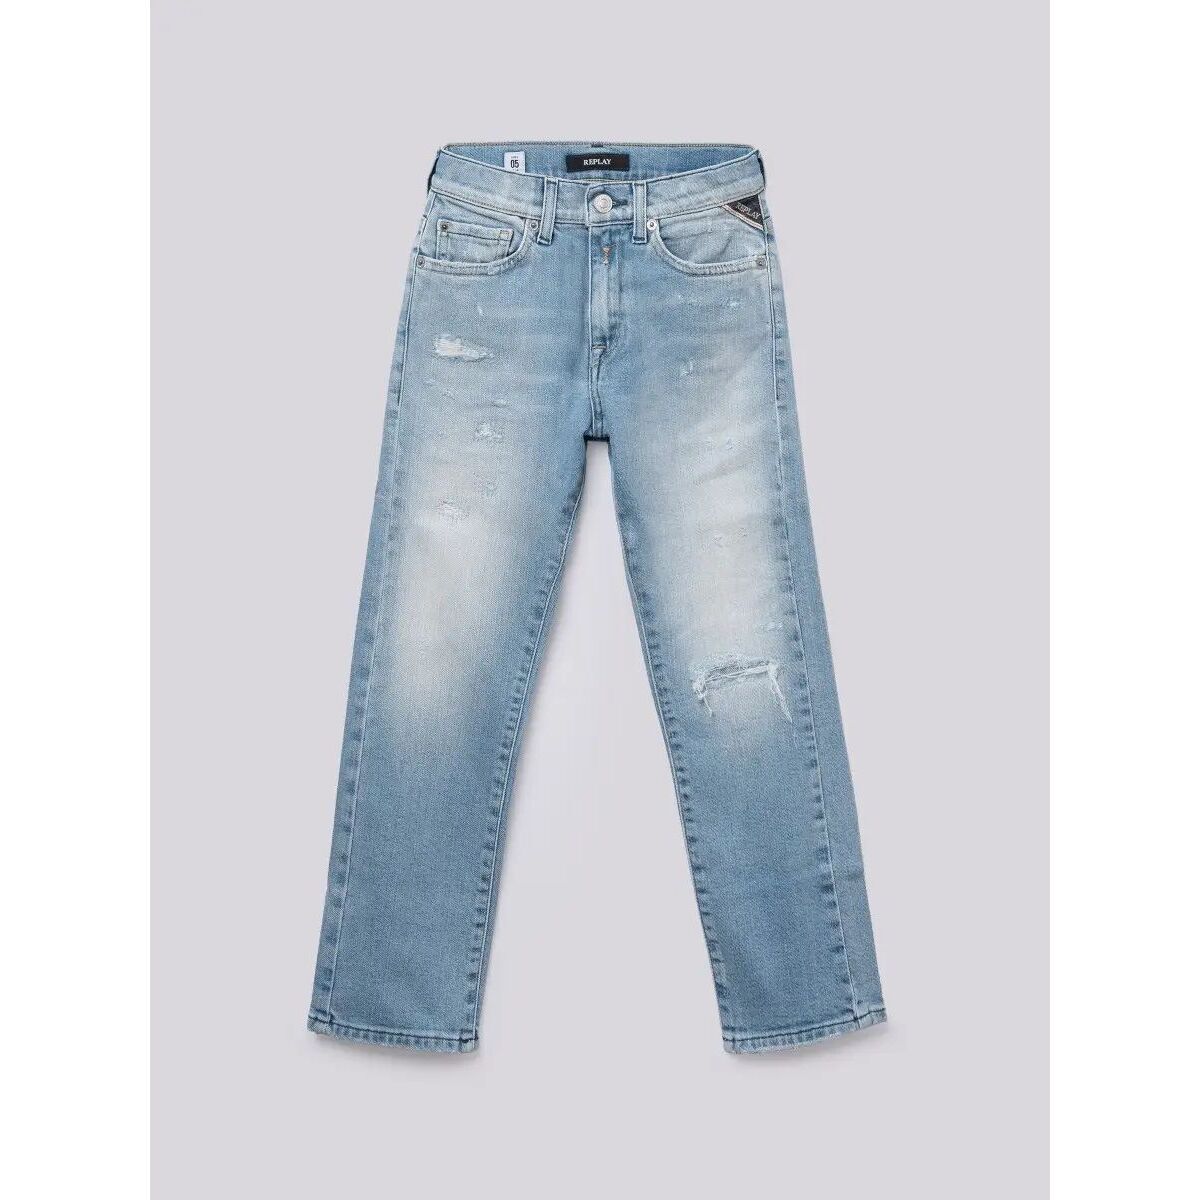 Vêtements Garçon Jeans Replay SB9090.223.930-011 Bleu